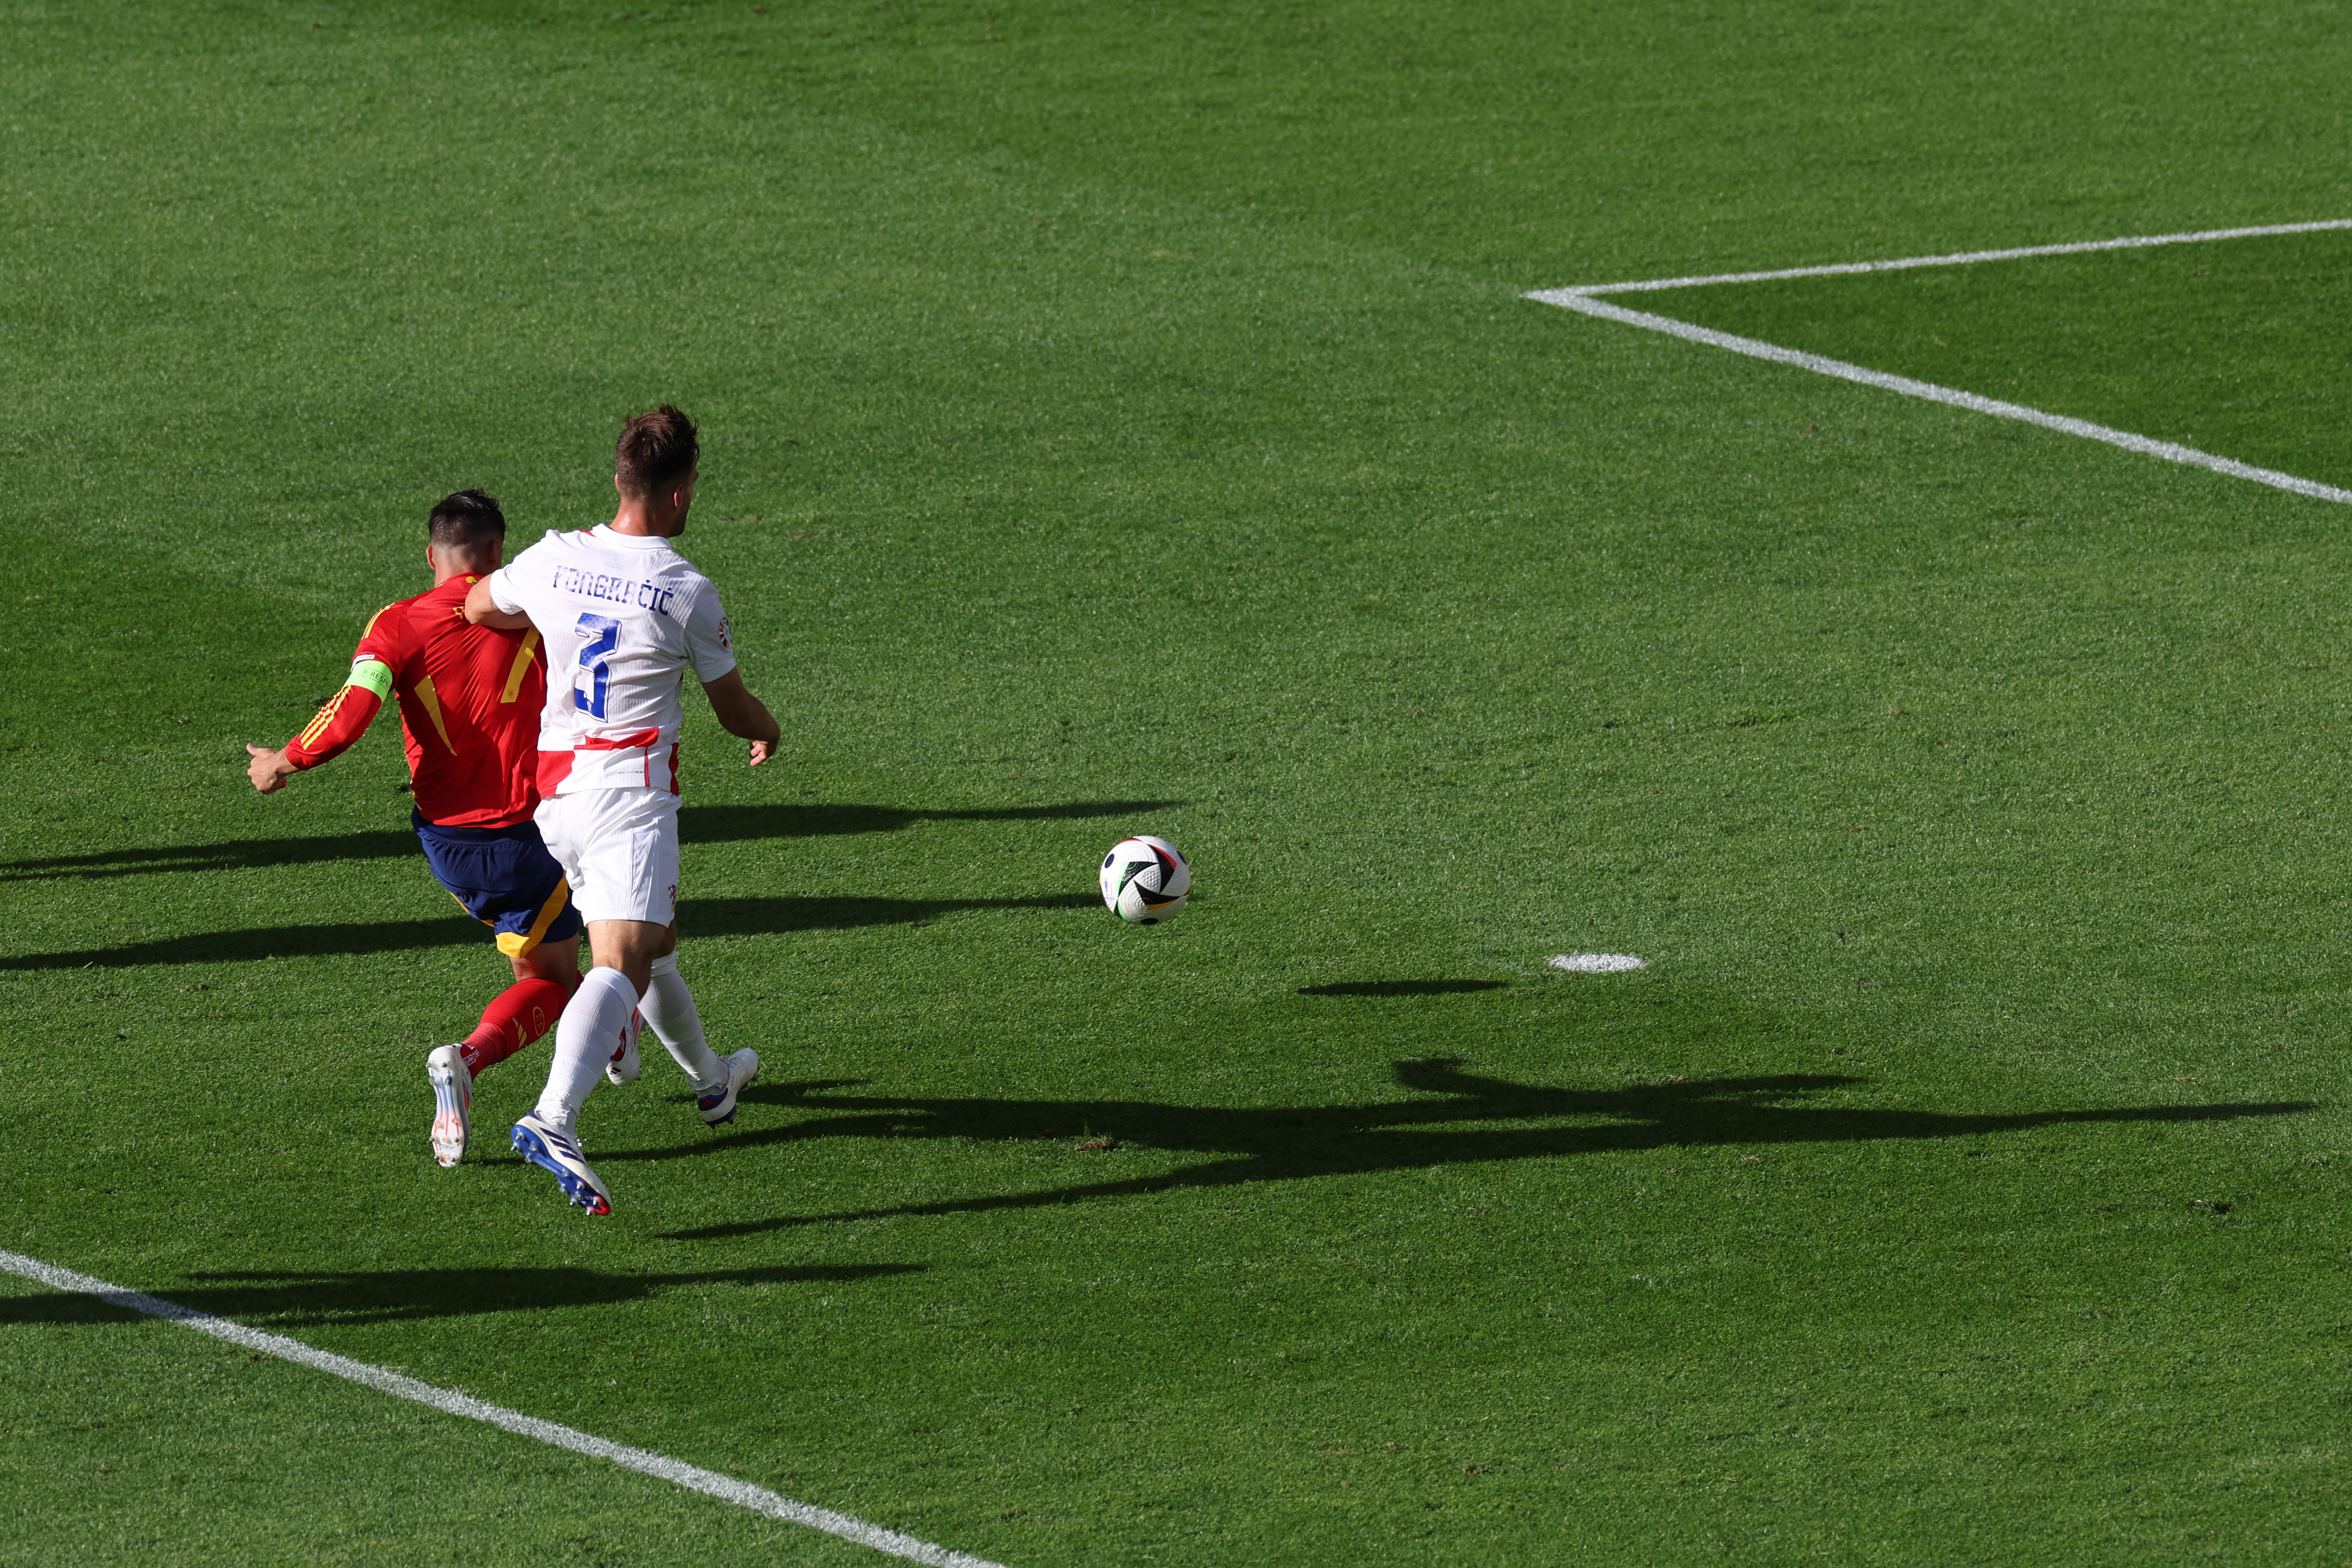 Alvaro Morata fires Spain into the lead